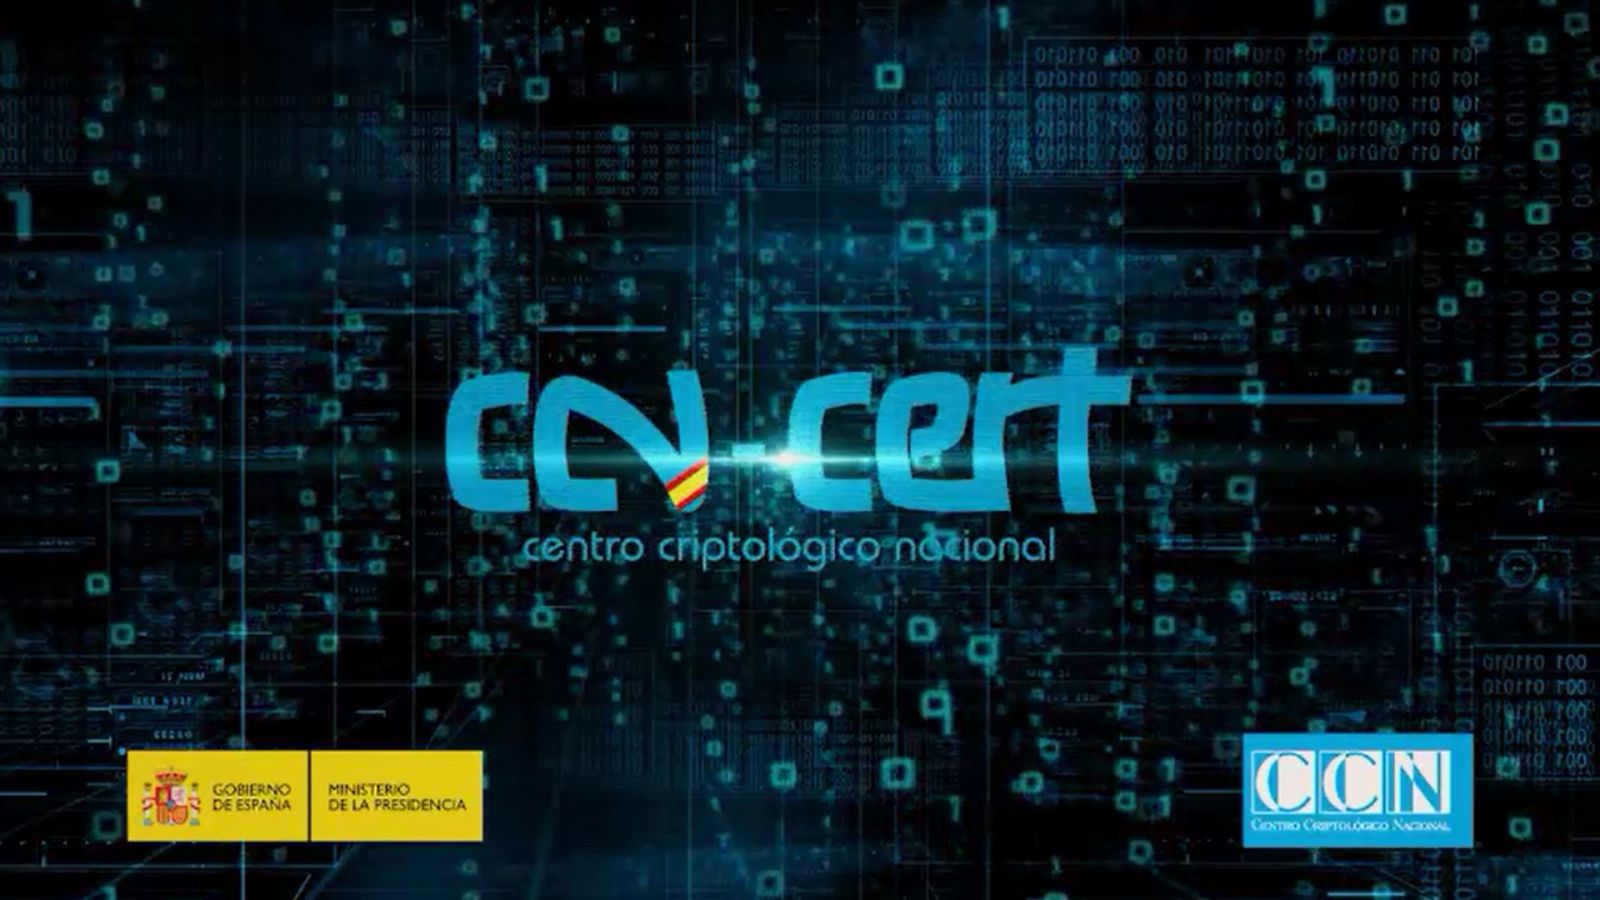 Logotipo del CCN en un vídeo elaborado por el propio centro. Fuente:  Web del CCN-CERT, Ministerio de Presidencia, Gobierno de España